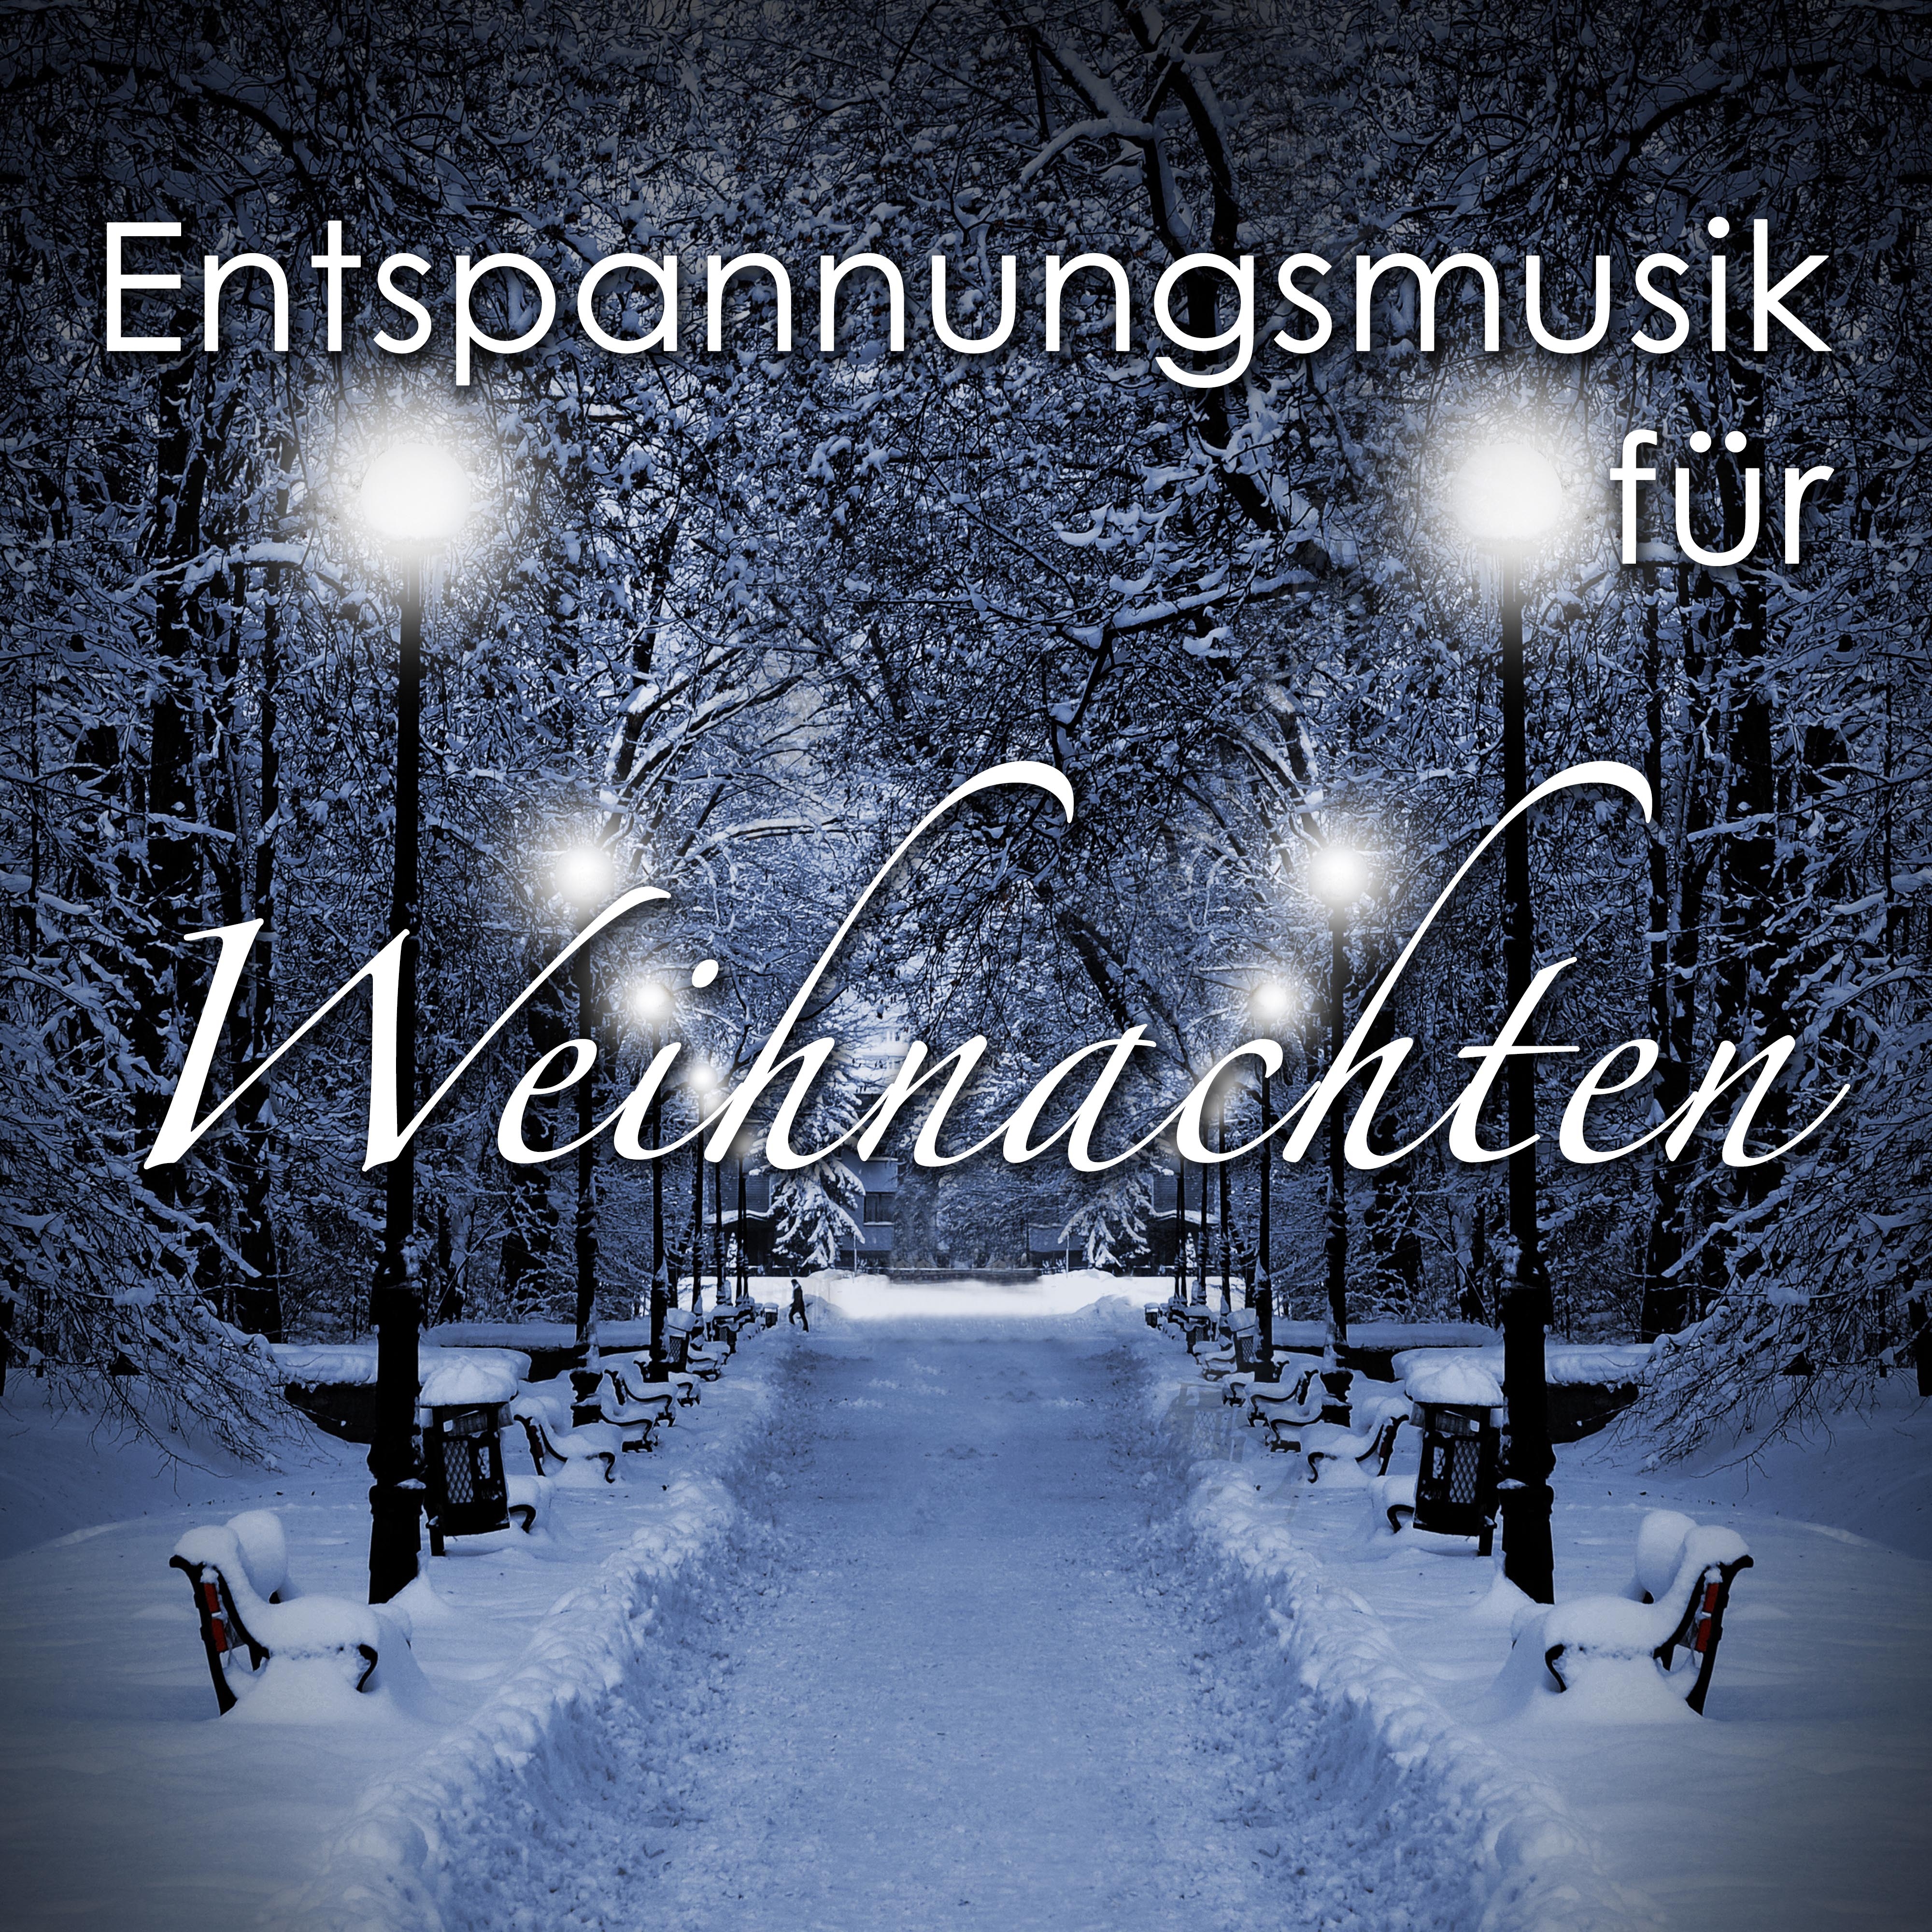 Entspannungsmusik für Weihnachten: Klaviermusik und New Age, Kirchenchor mit Naturgeräusche, Klänge des Ozeans und Gitarre für Entspannung